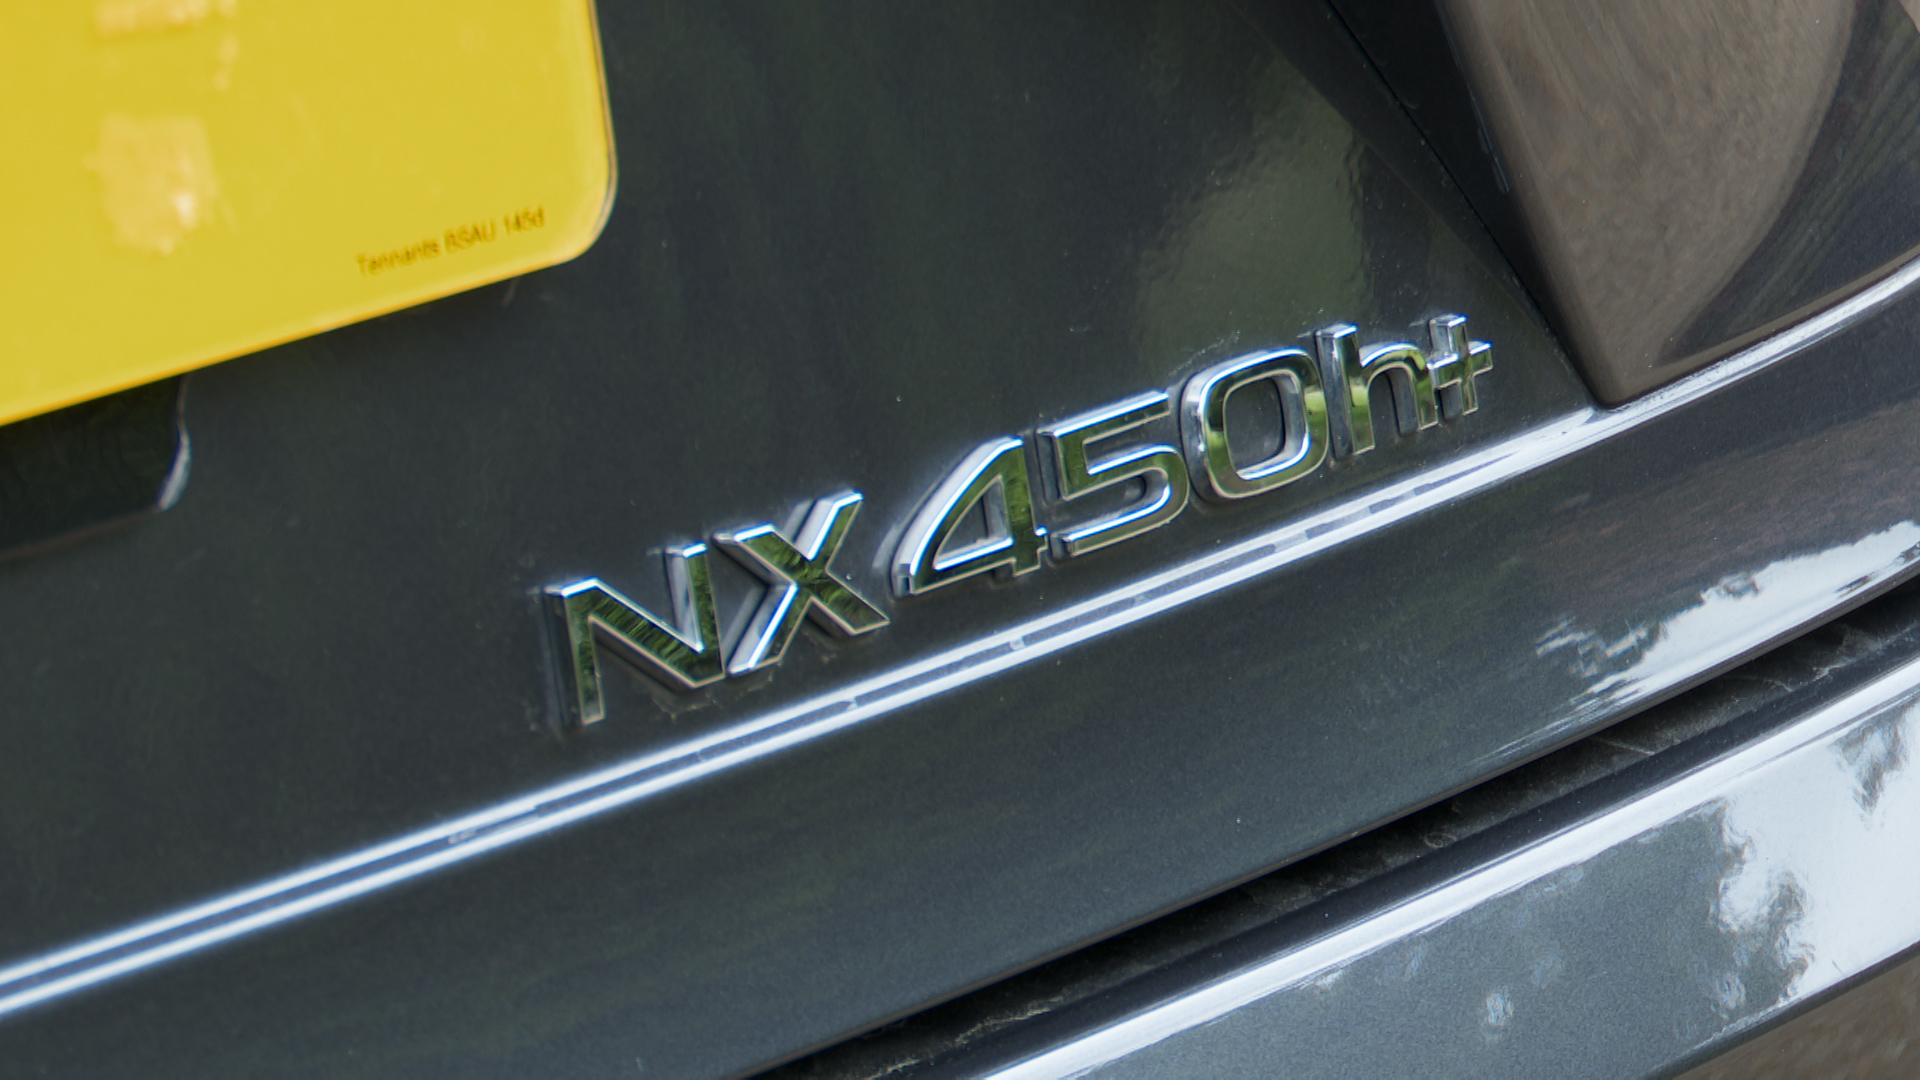 LEXUS NX ESTATE 450h+ 2.5 F-Sport 5dr E-CVT [Premium Plus/Sunroof]